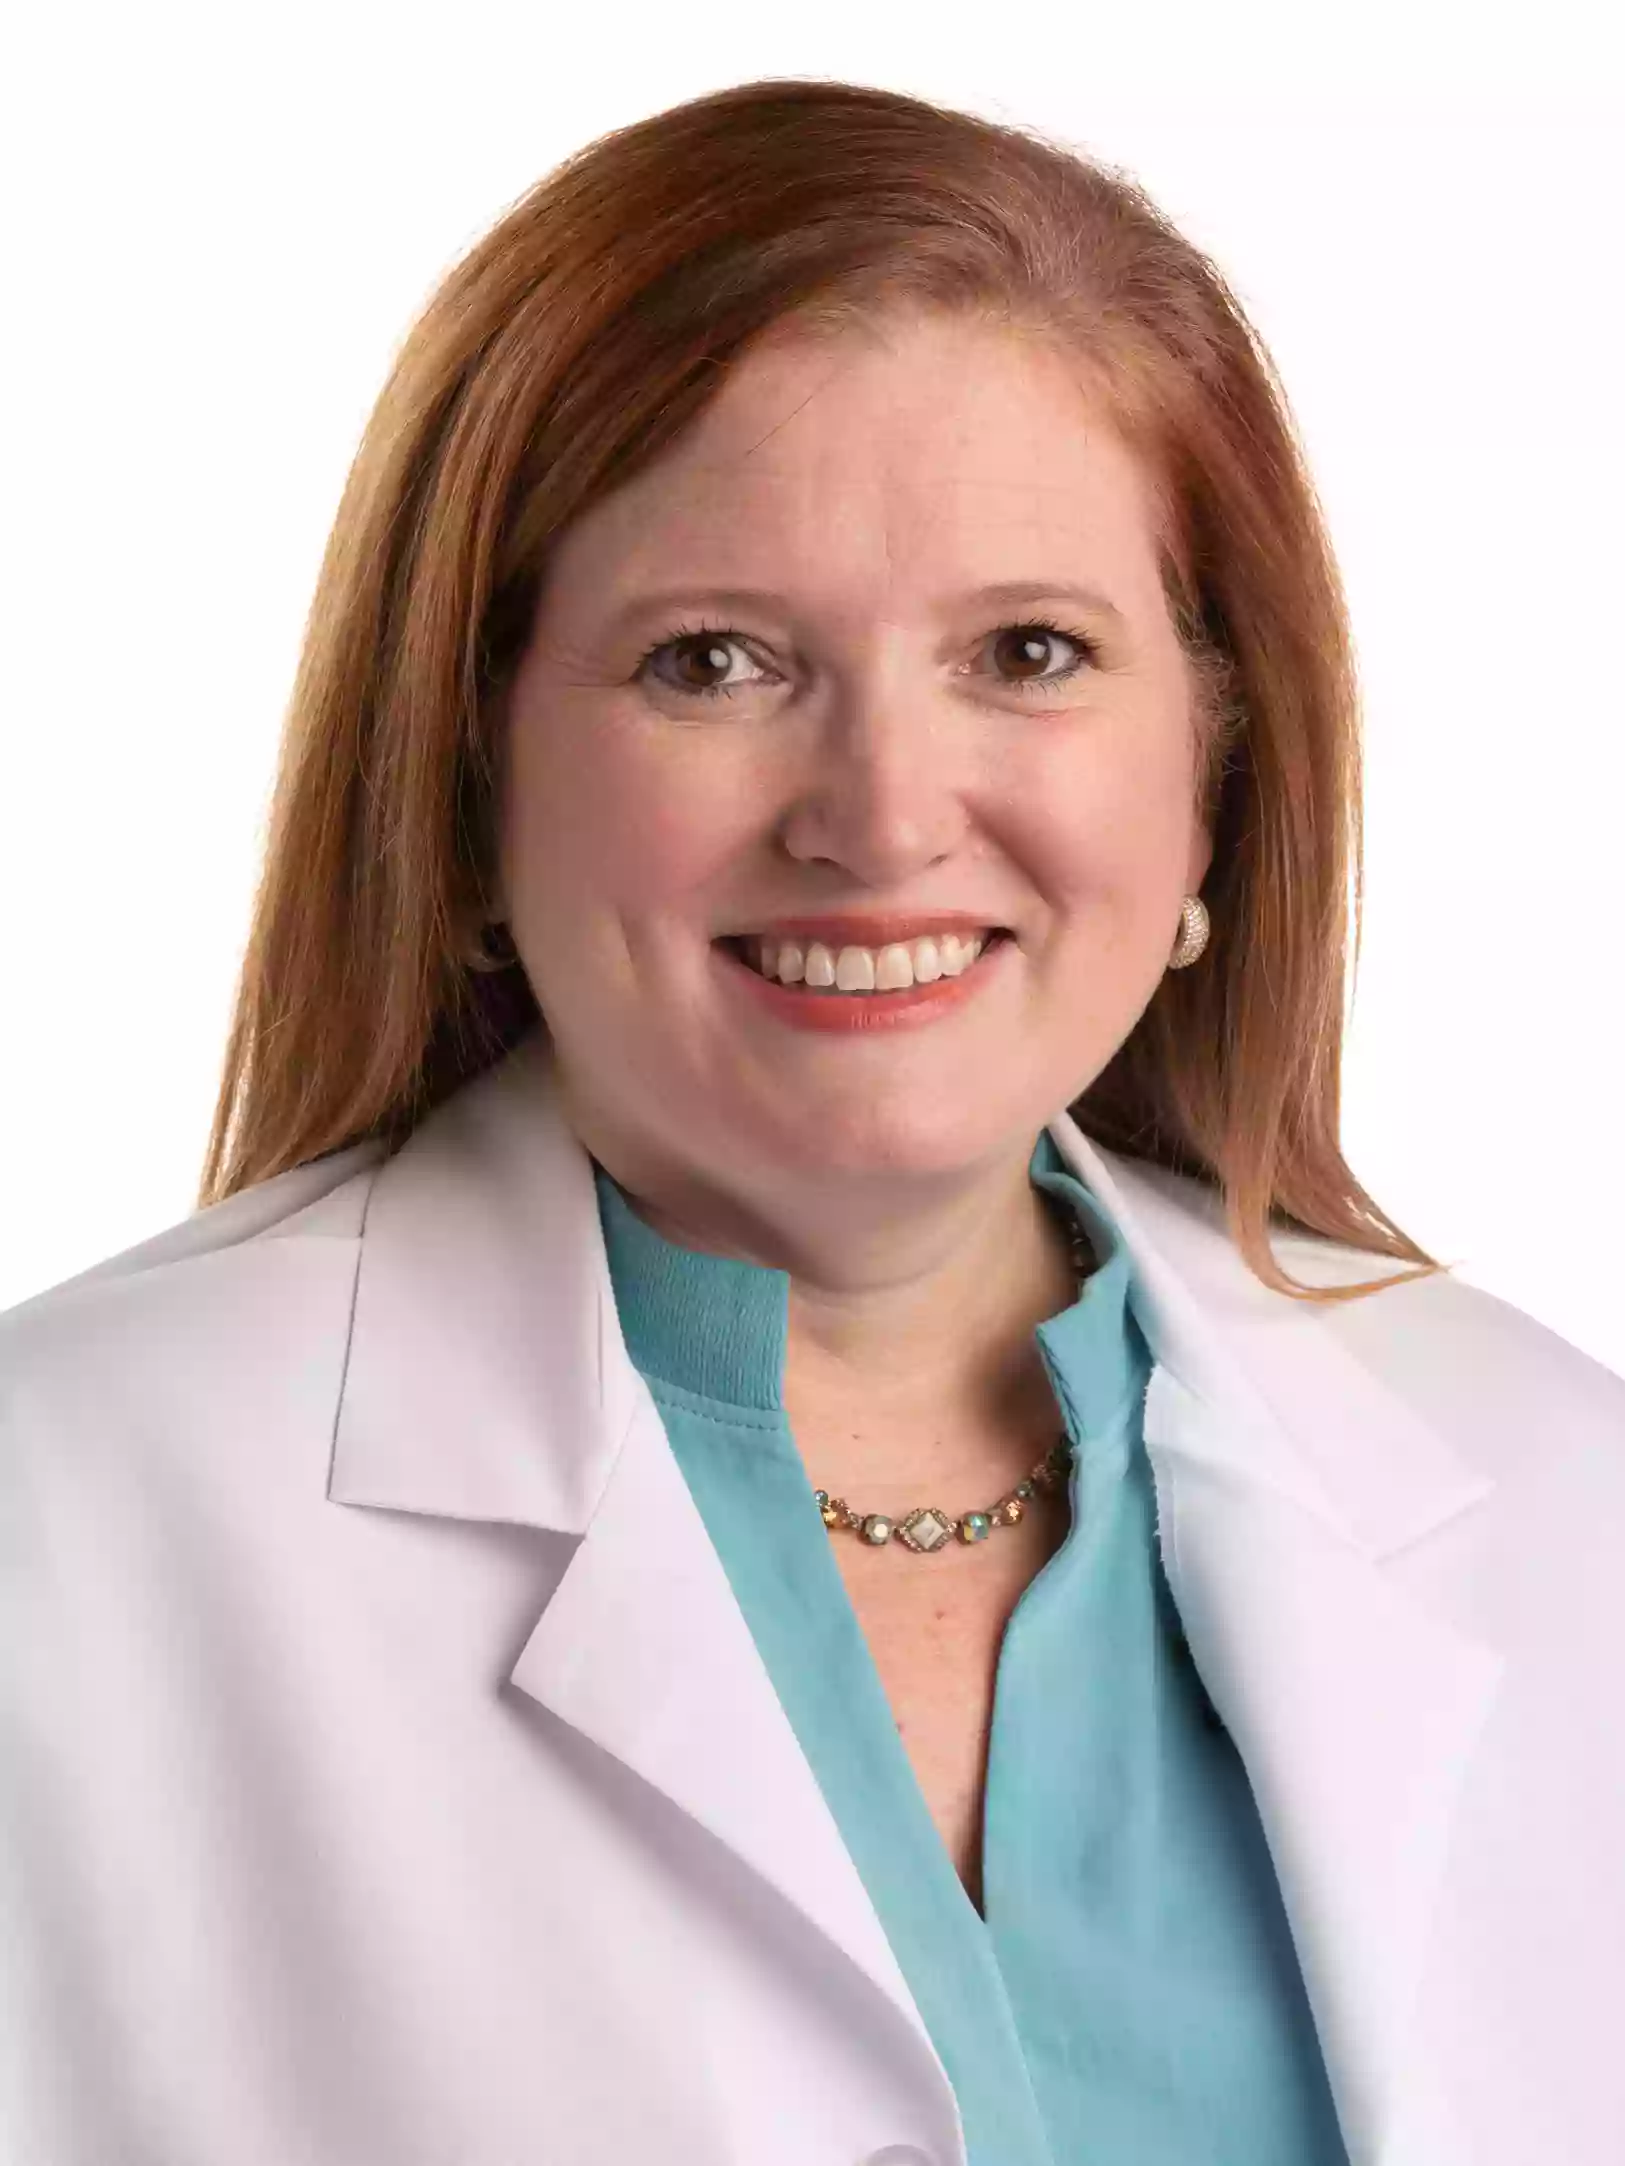 UAMS Health - Amy M. Scurlock, M.D.